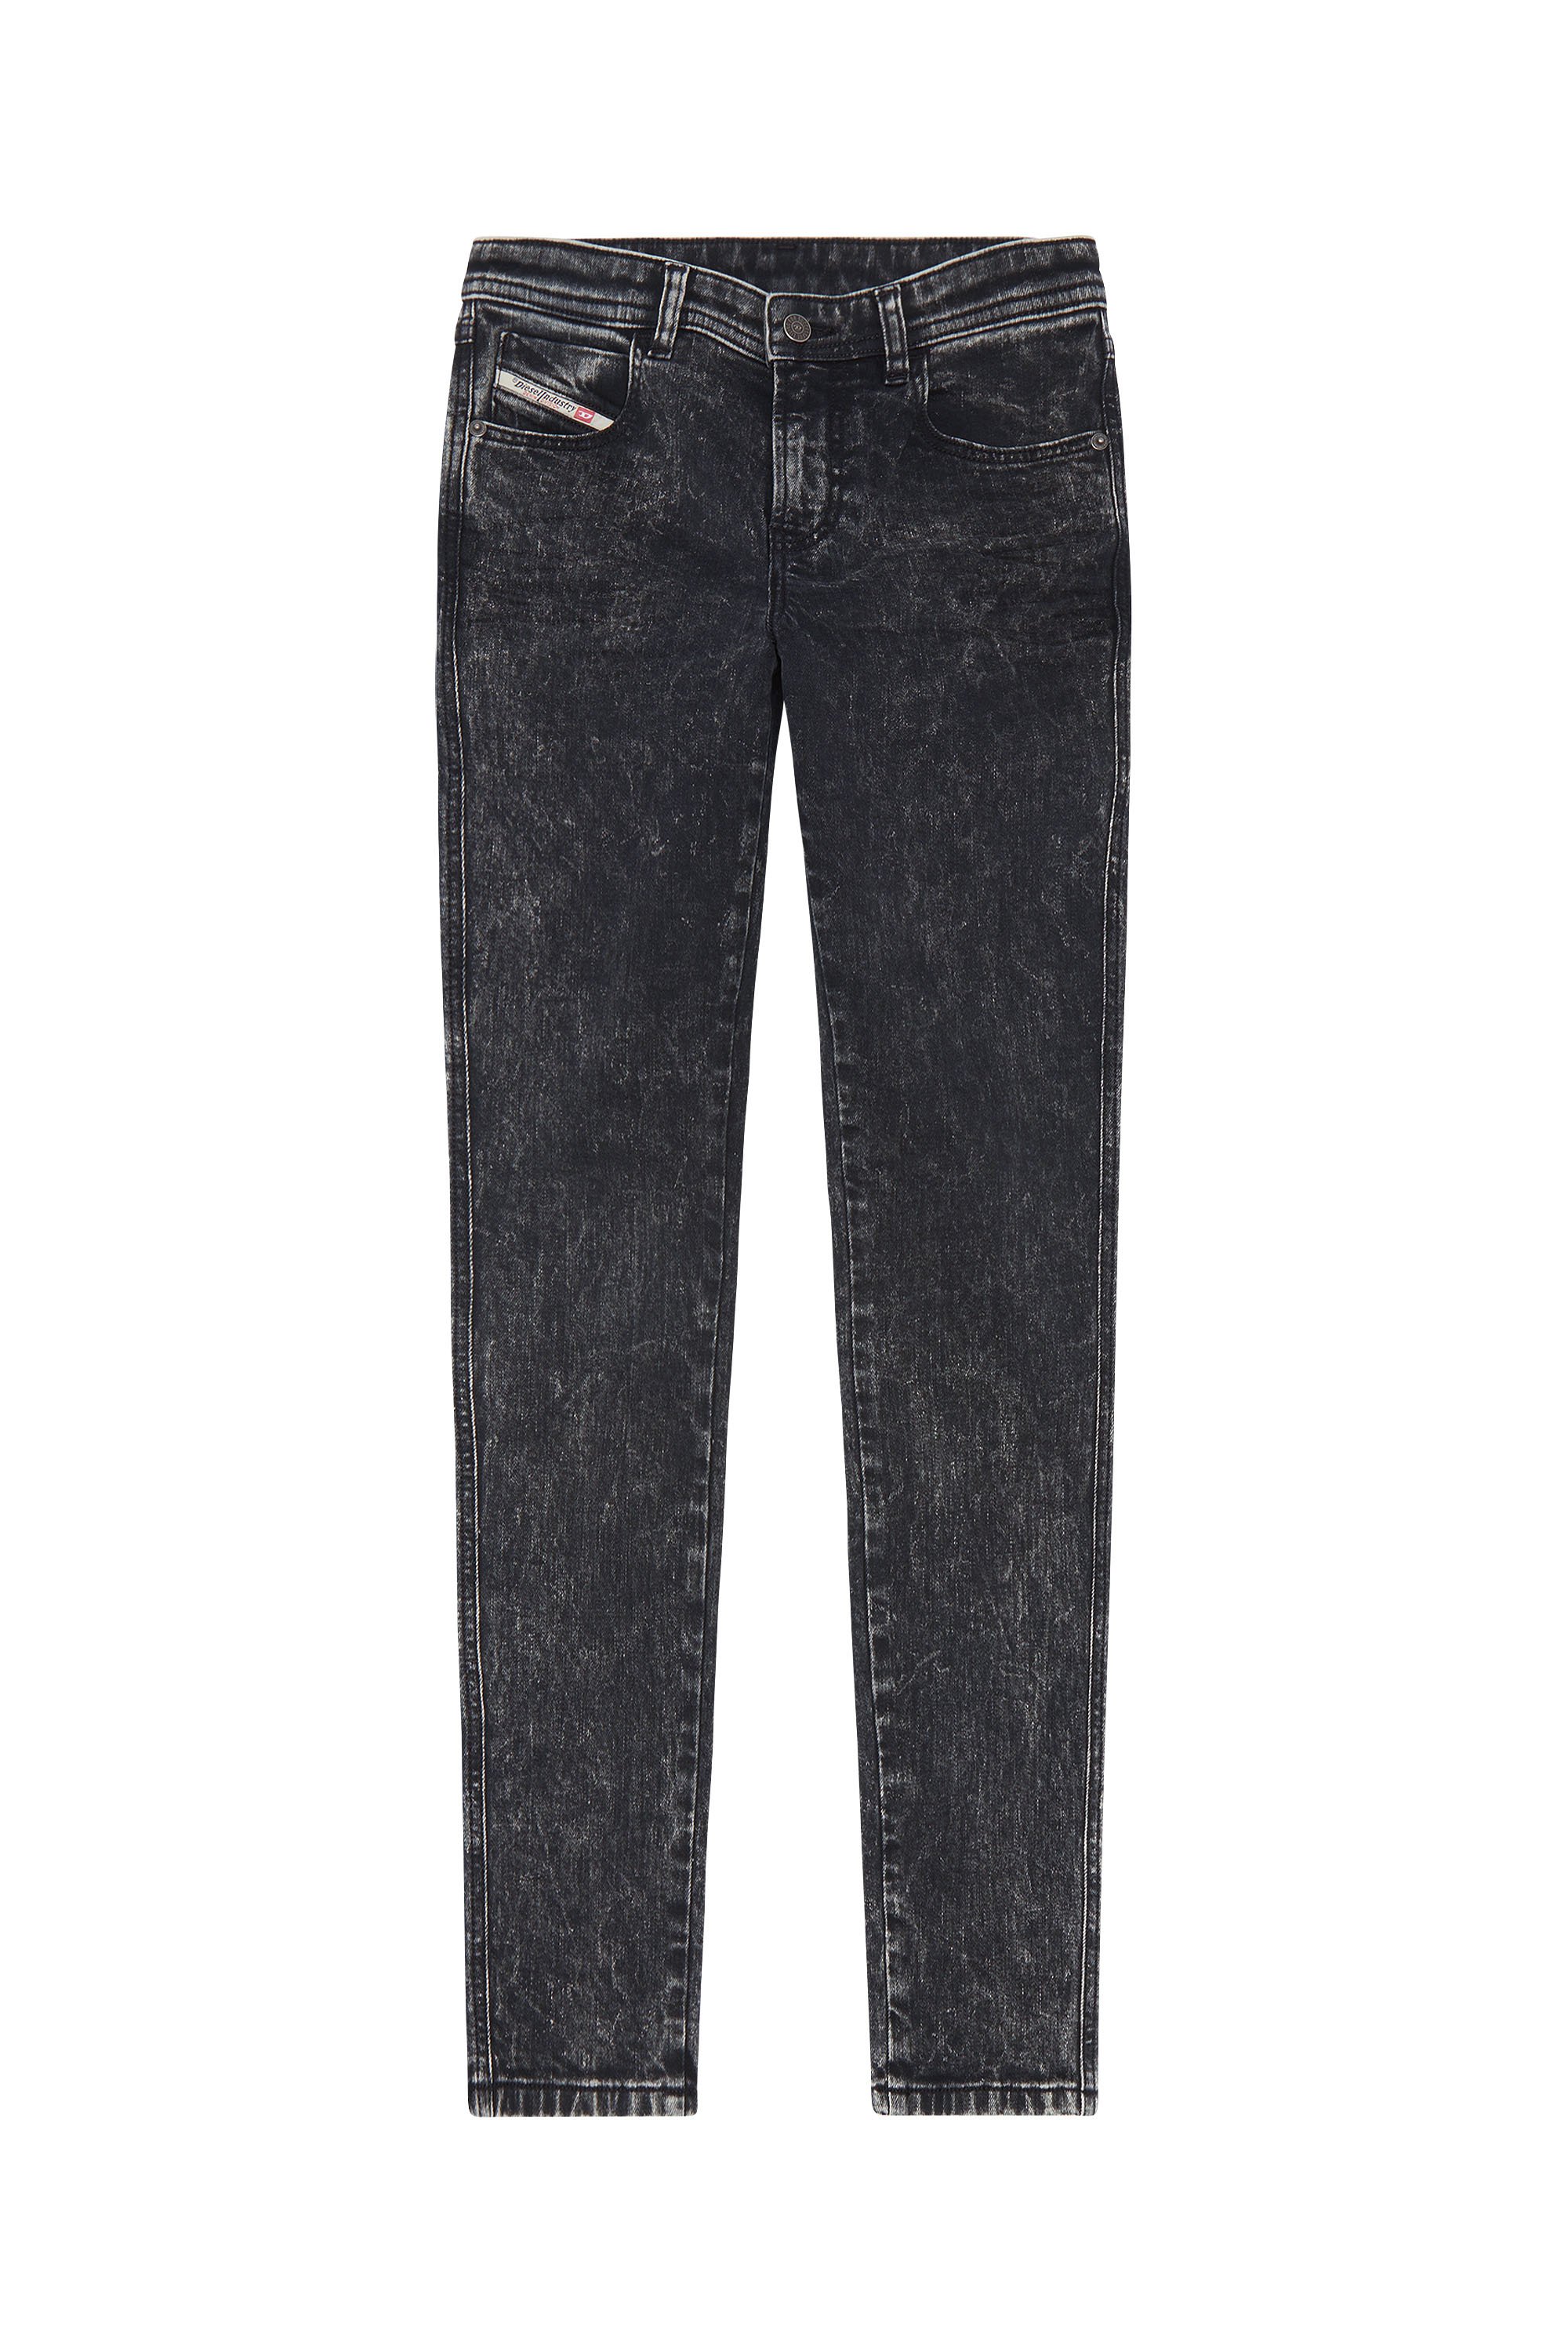 Diesel - Skinny Jeans 2015 Babhila 0ENAN, Black/Dark grey - Image 5